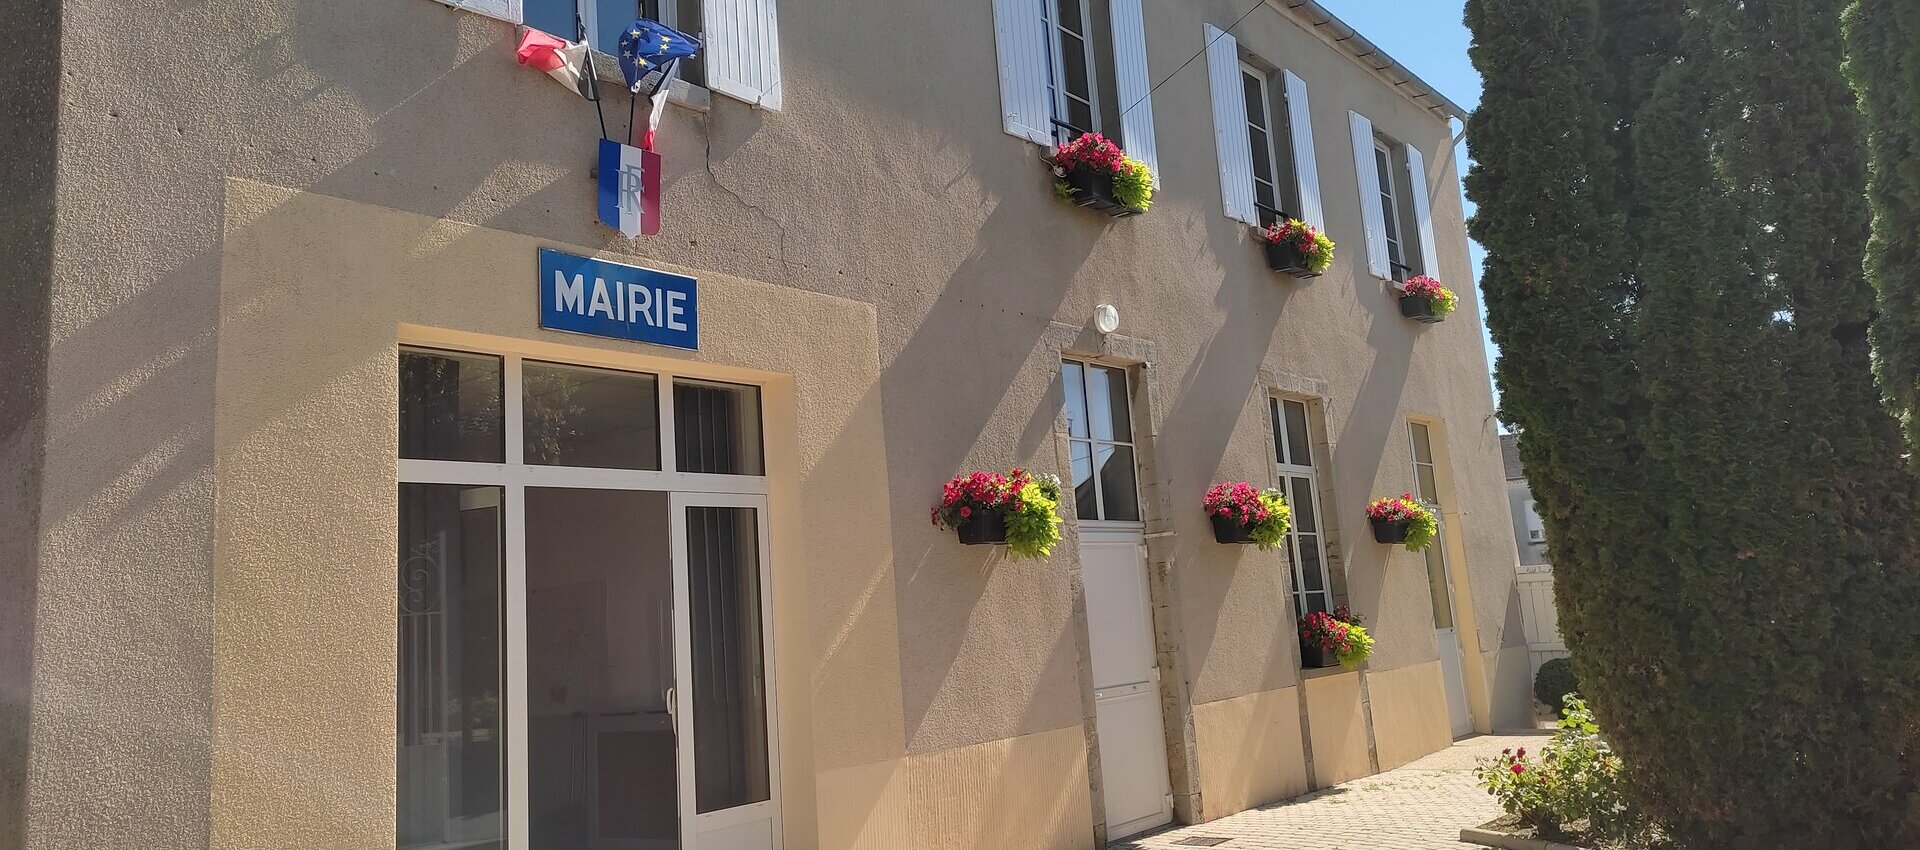 Mairie de Thignonville au cœur du Pithiverais dans le 45 Loiret